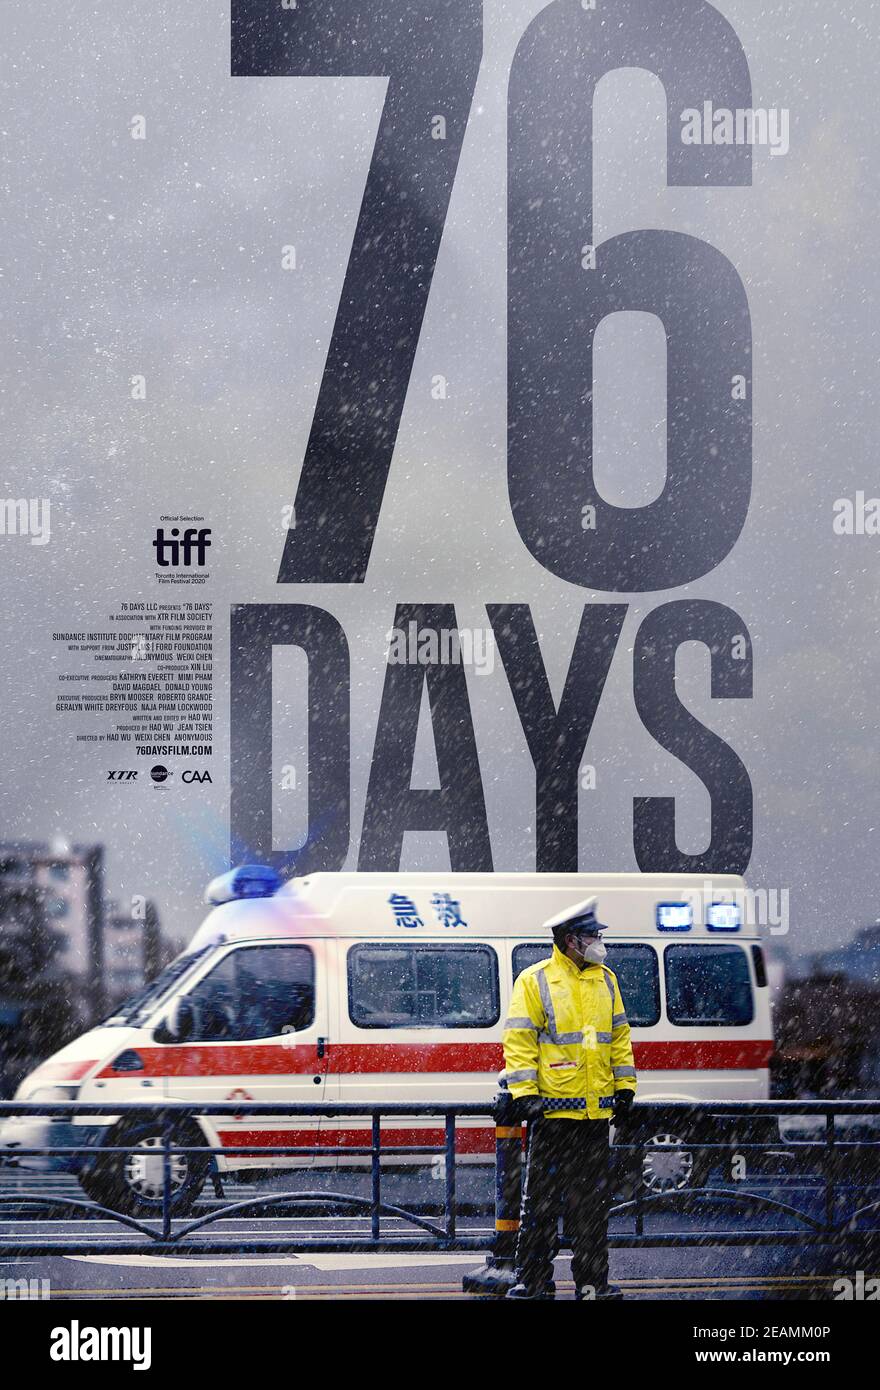 76 días (2020) dirigidos por Weixi Chen y Hao Wu. Documental sobre los pacientes y los profesionales médicos de primera línea que luchan contra la pandemia del COVID-19 durante sus primeros días en Wuhan, China. Foto de stock